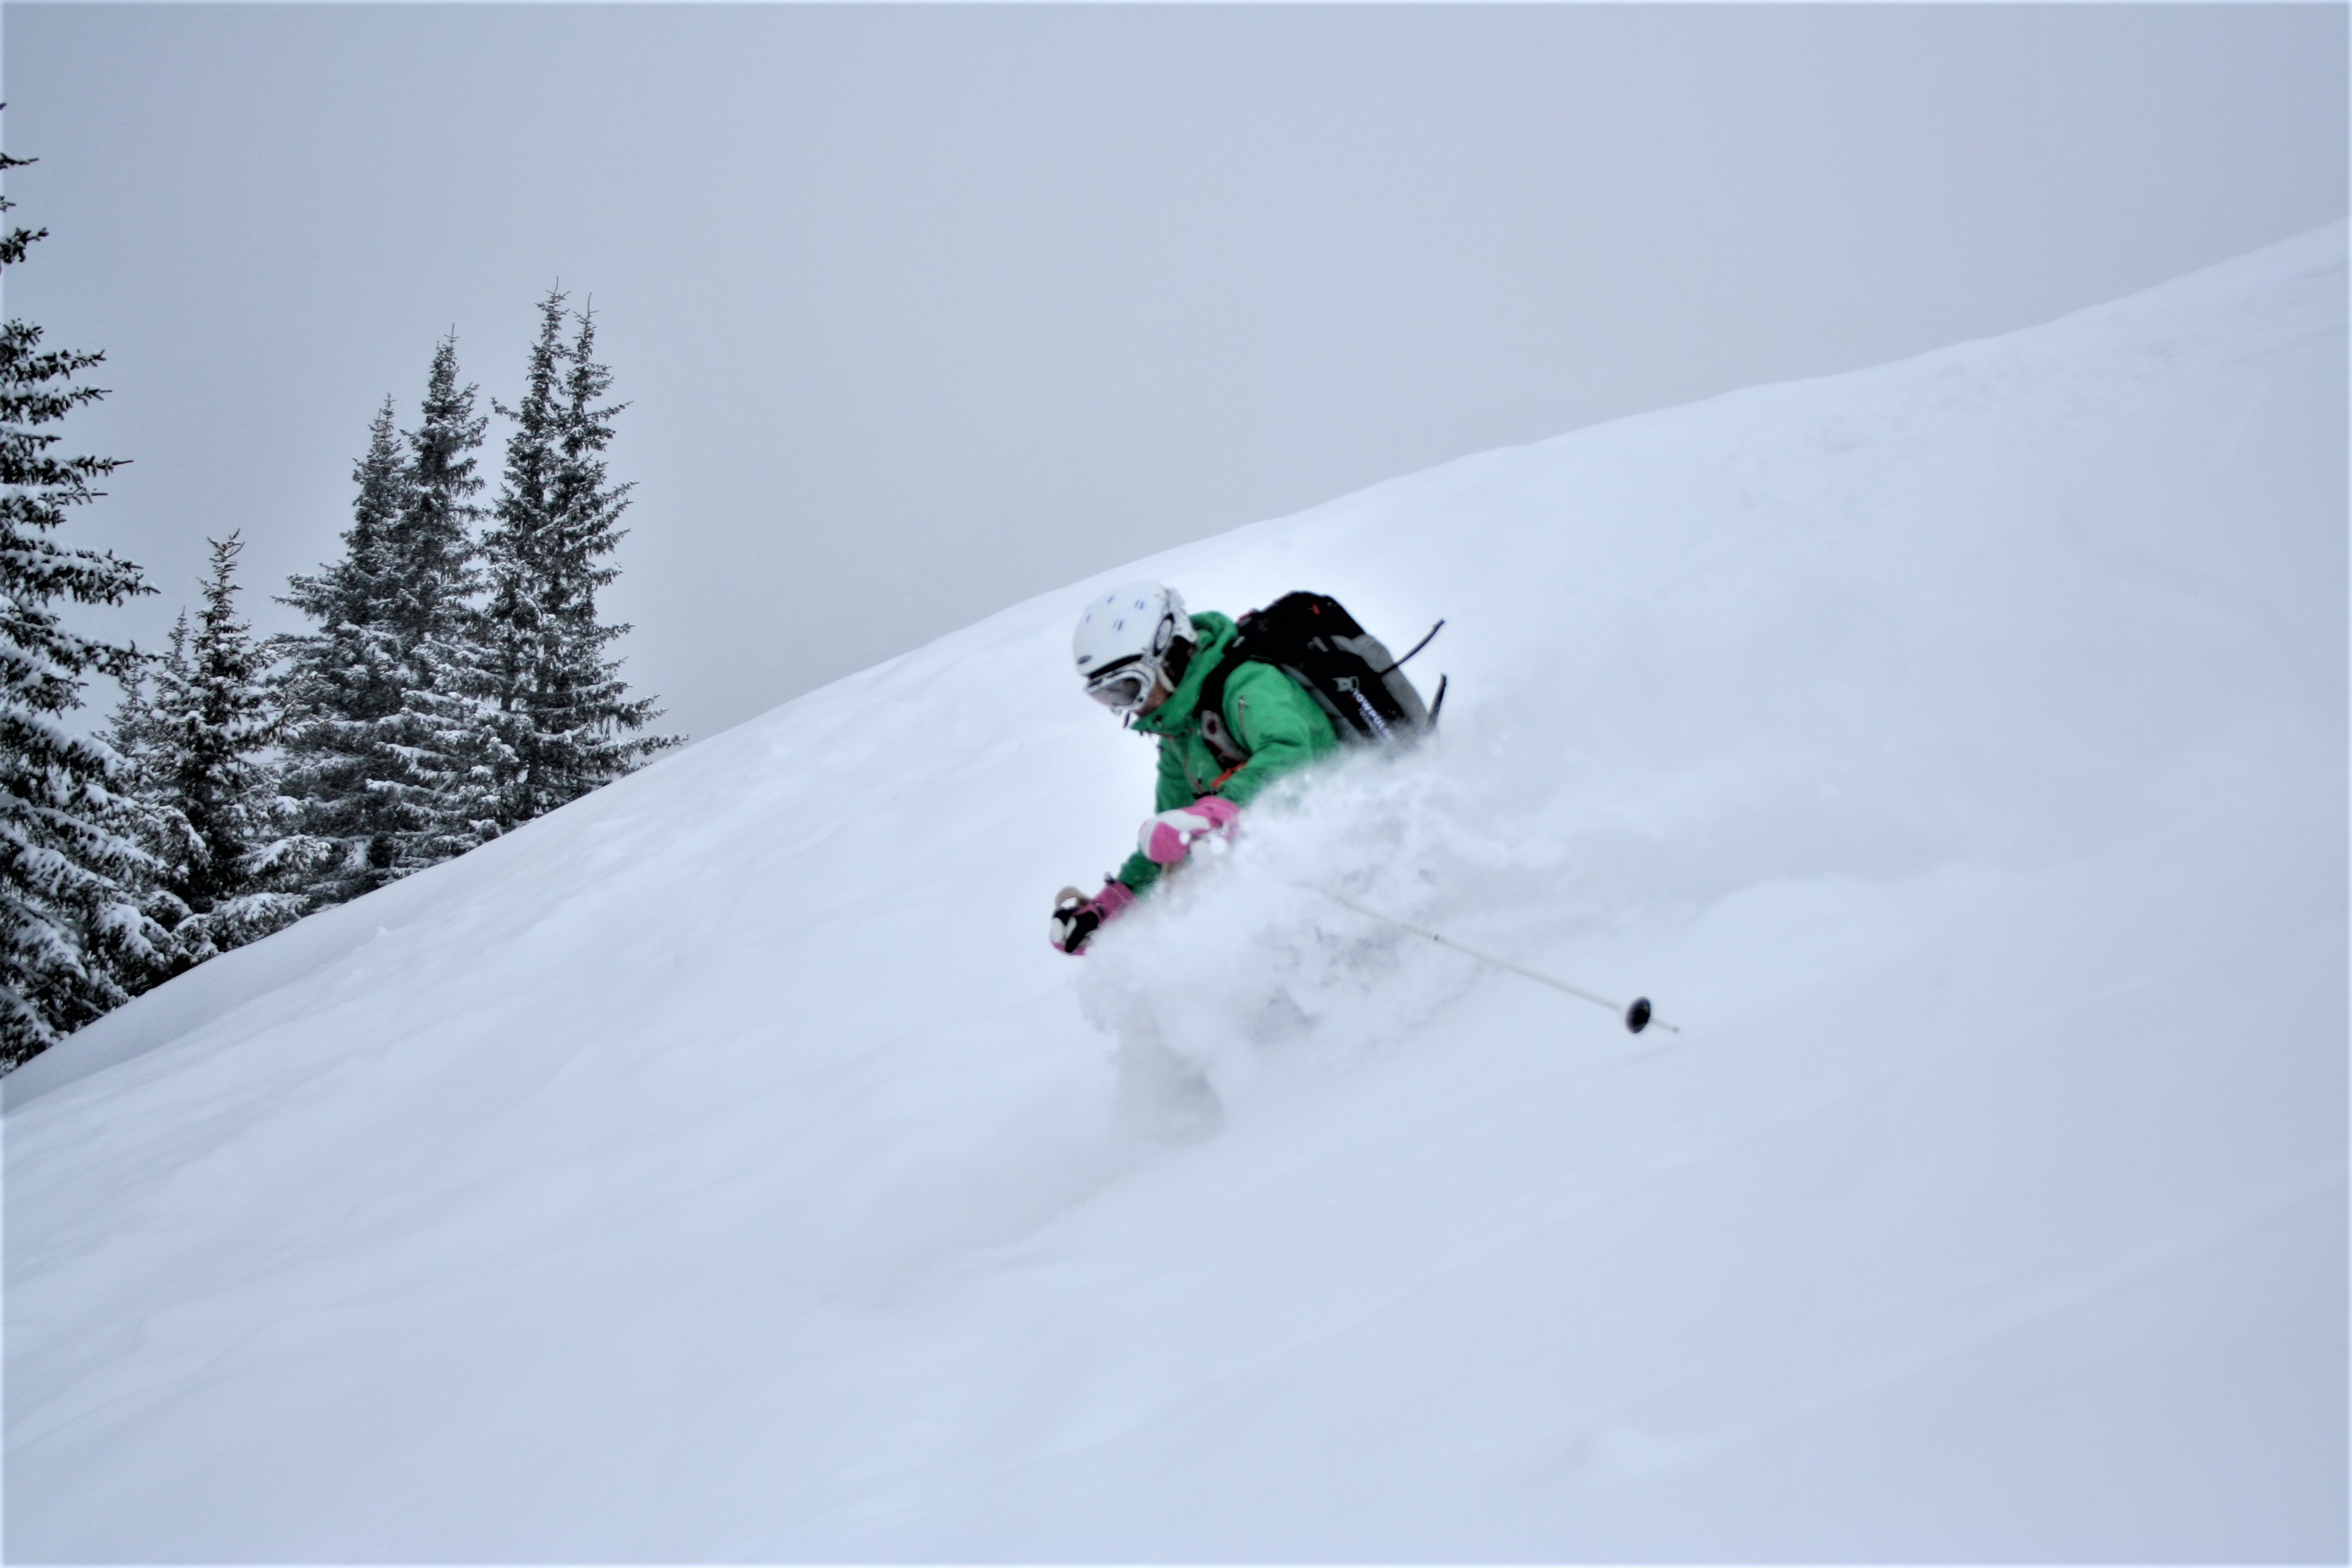 off-piste skier in powder snow